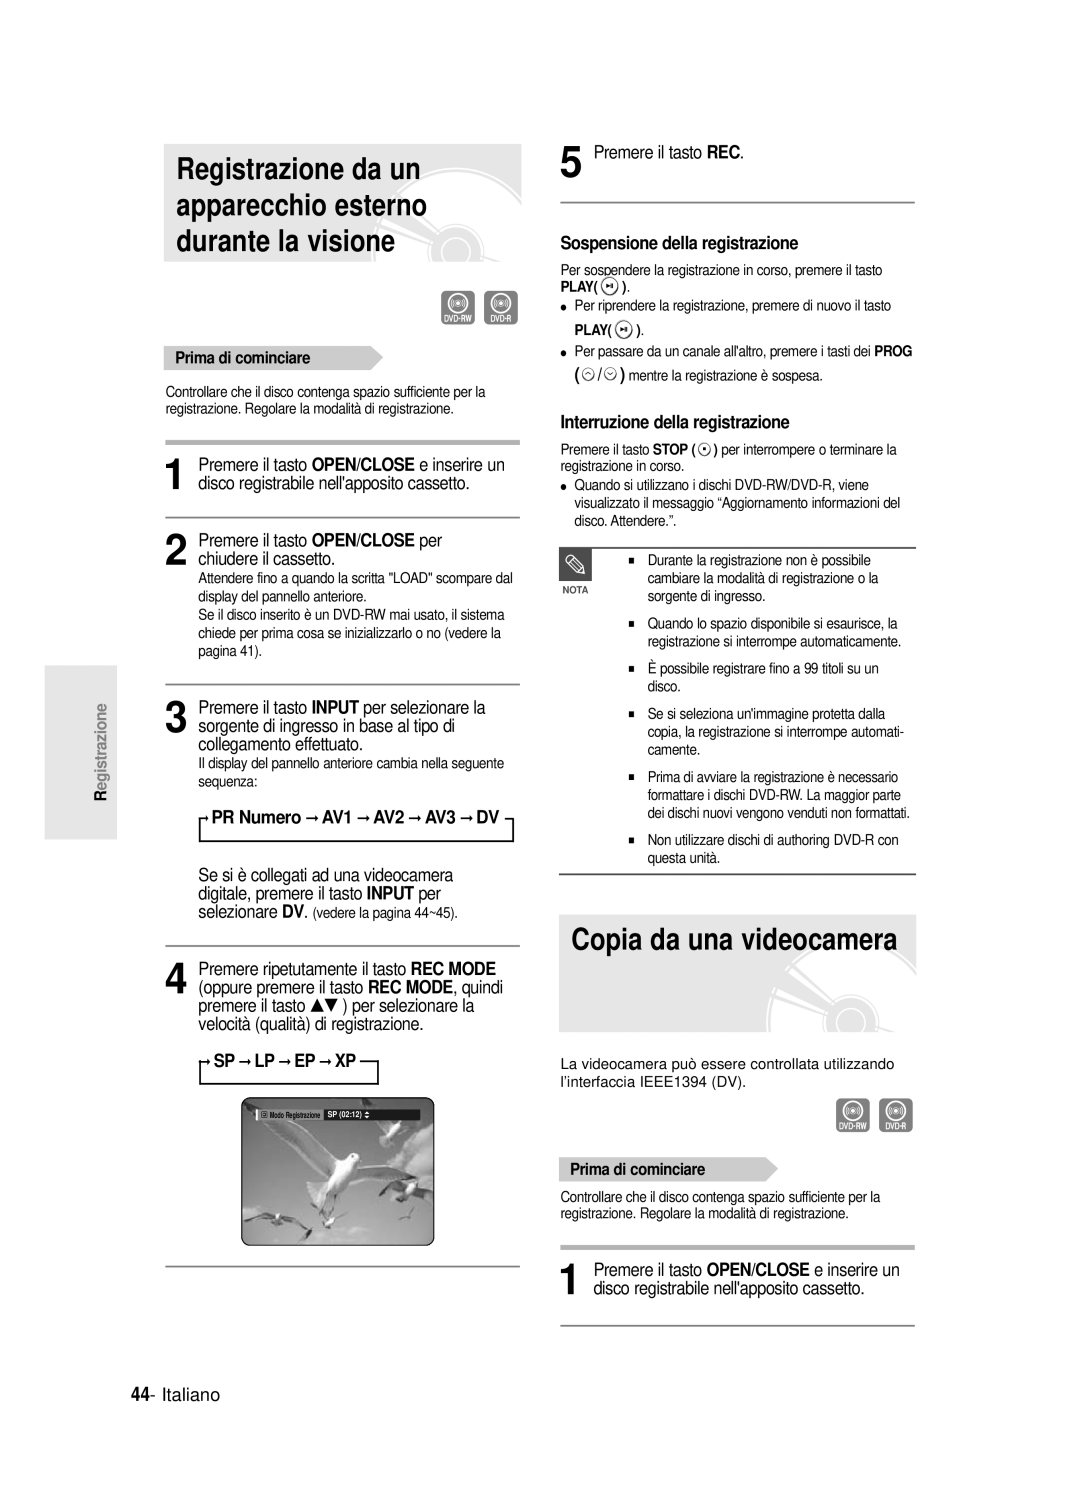 Samsung DVD-R121E/XEG manual Copia da una videocamera, Registrazione da un apparecchio esterno durante la visione, Italiano 